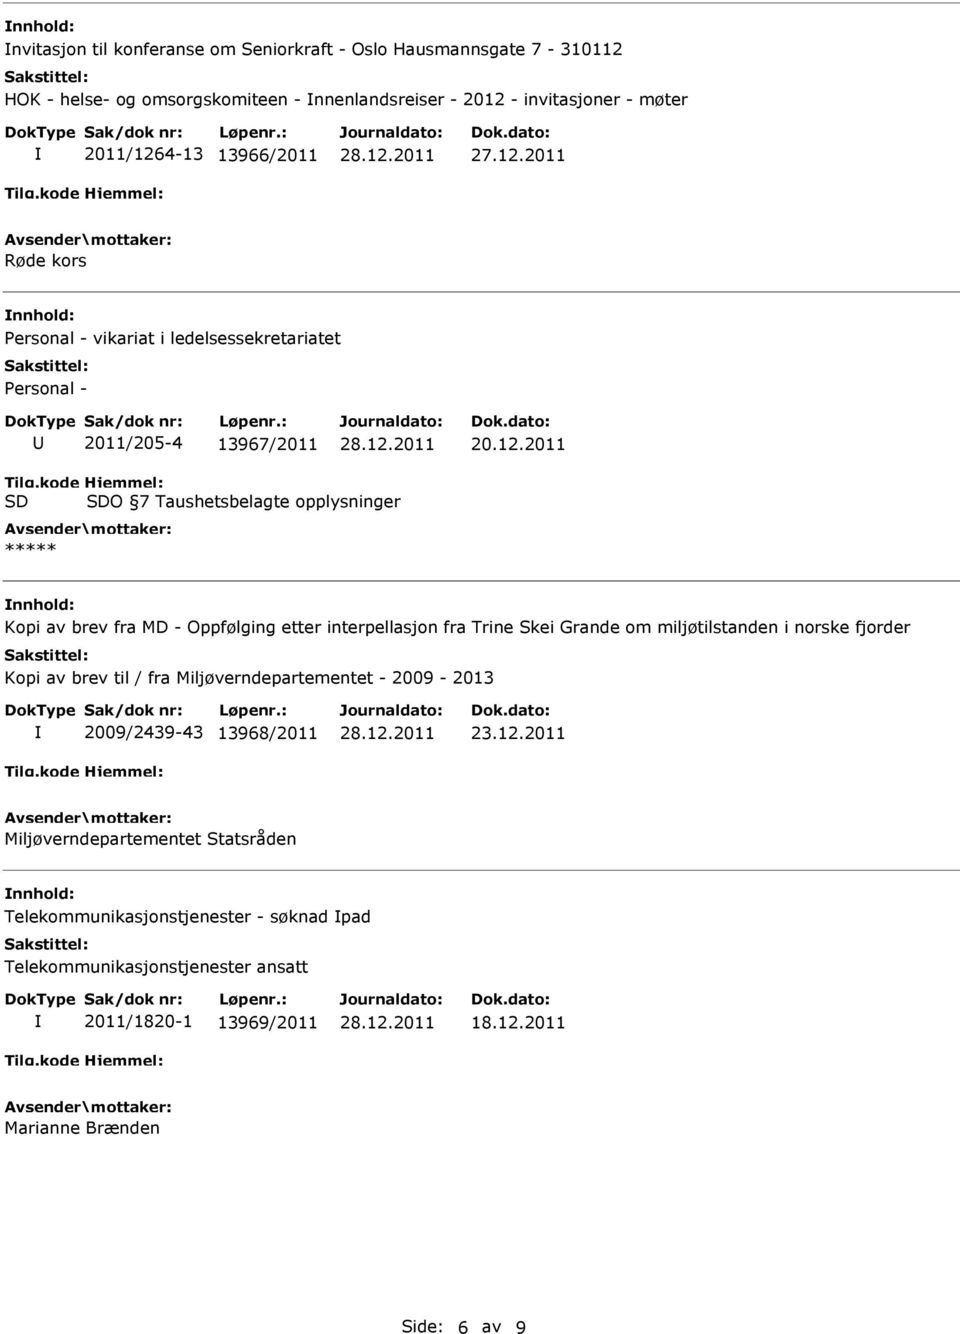 Oppfølging etter interpellasjon fra Trine Skei Grande om miljøtilstanden i norske fjorder Kopi av brev til / fra Miljøverndepartementet - 2009-2013